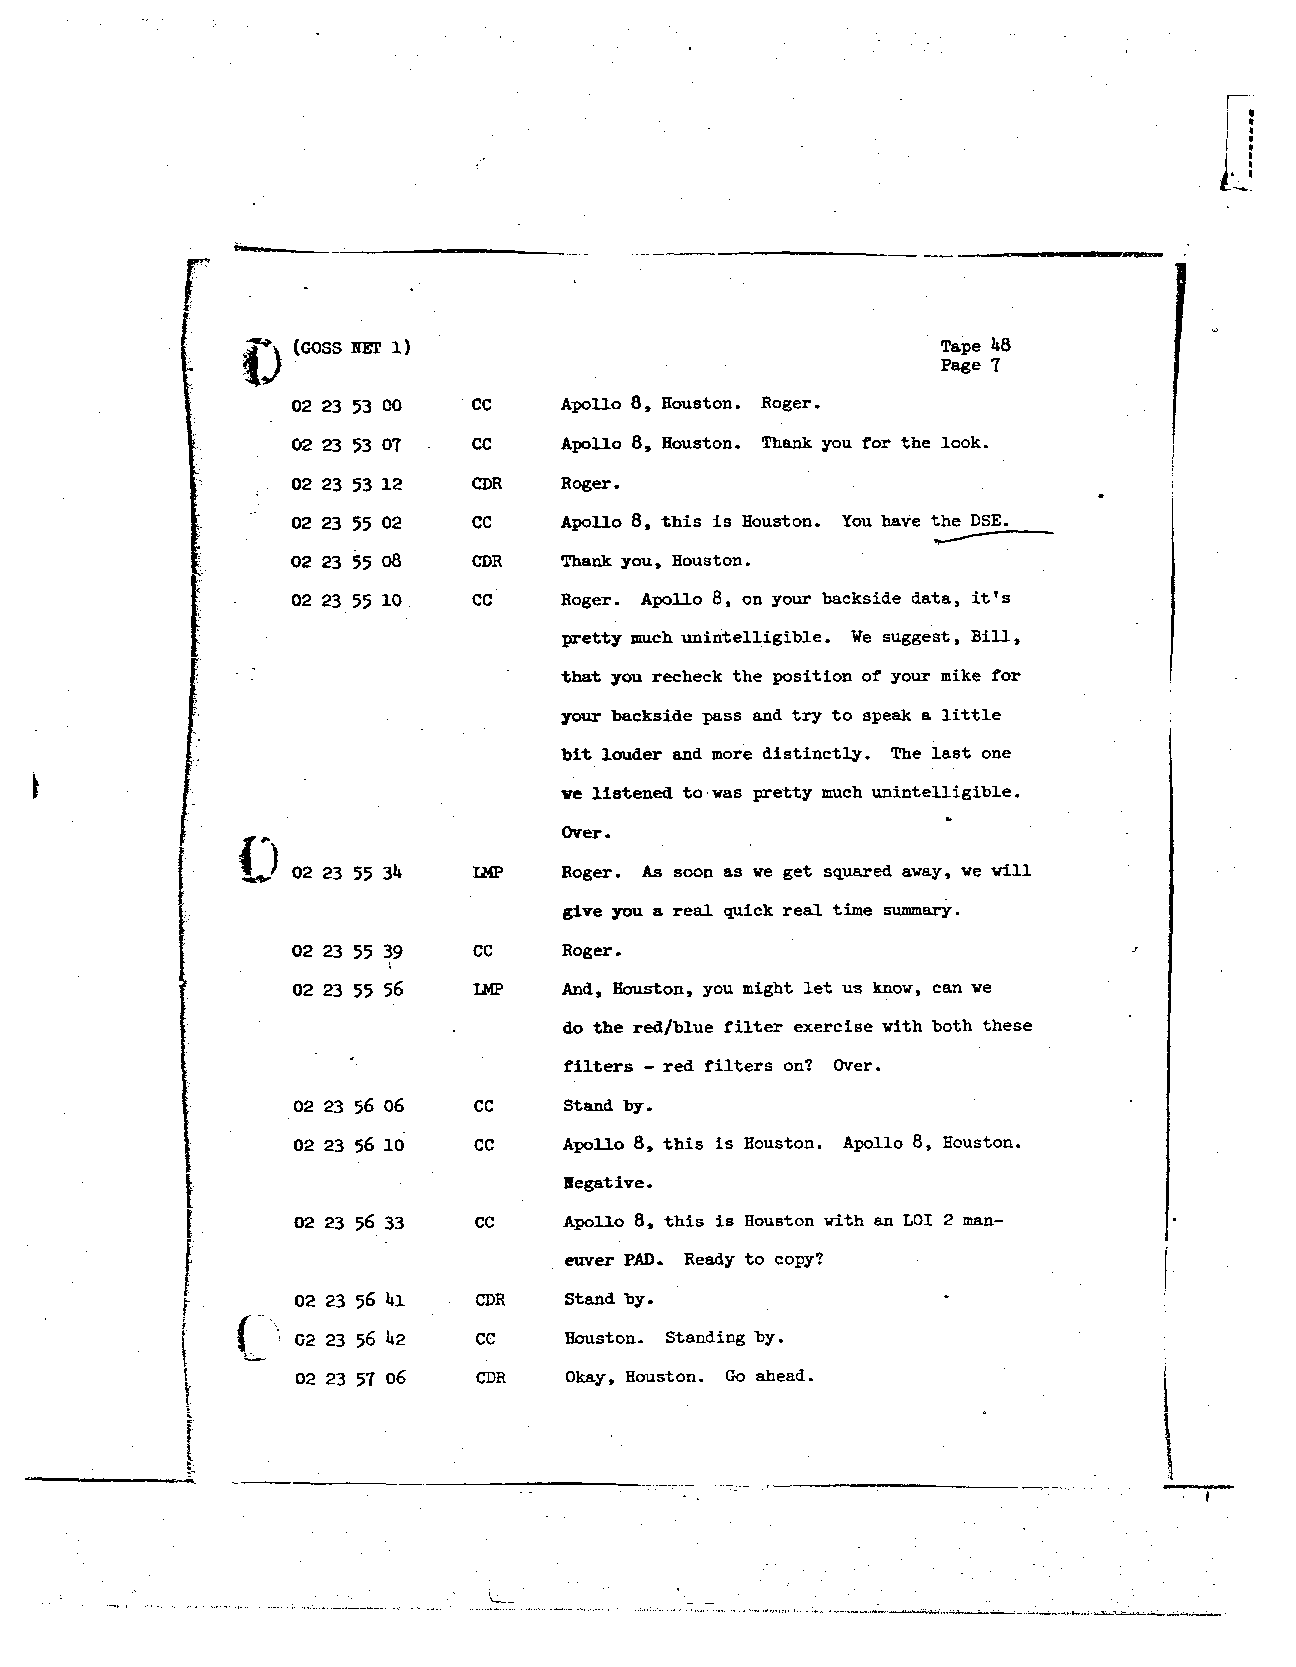 Page 379 of Apollo 8’s original transcript